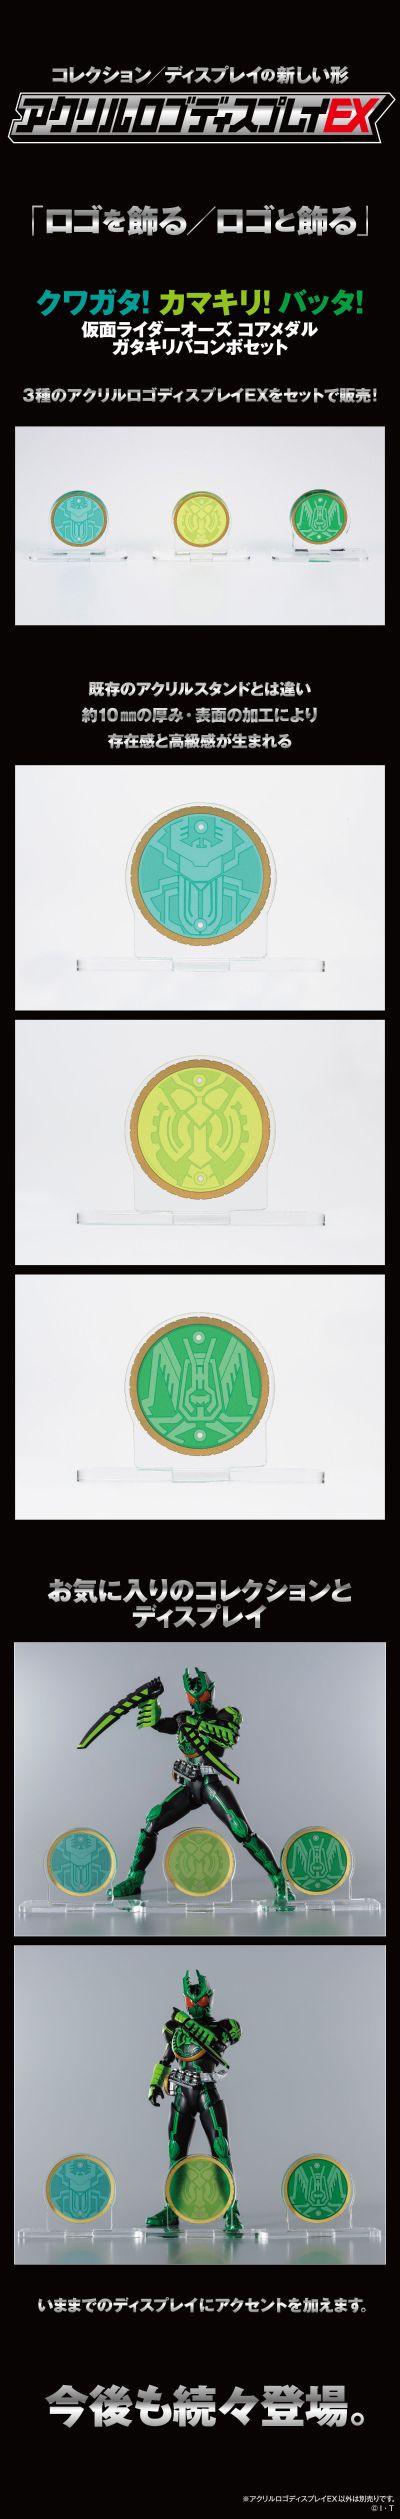 亚克力Logo摆件 EX 假面骑士欧兹 锹螳蝗联组/虫系联组 核心硬币